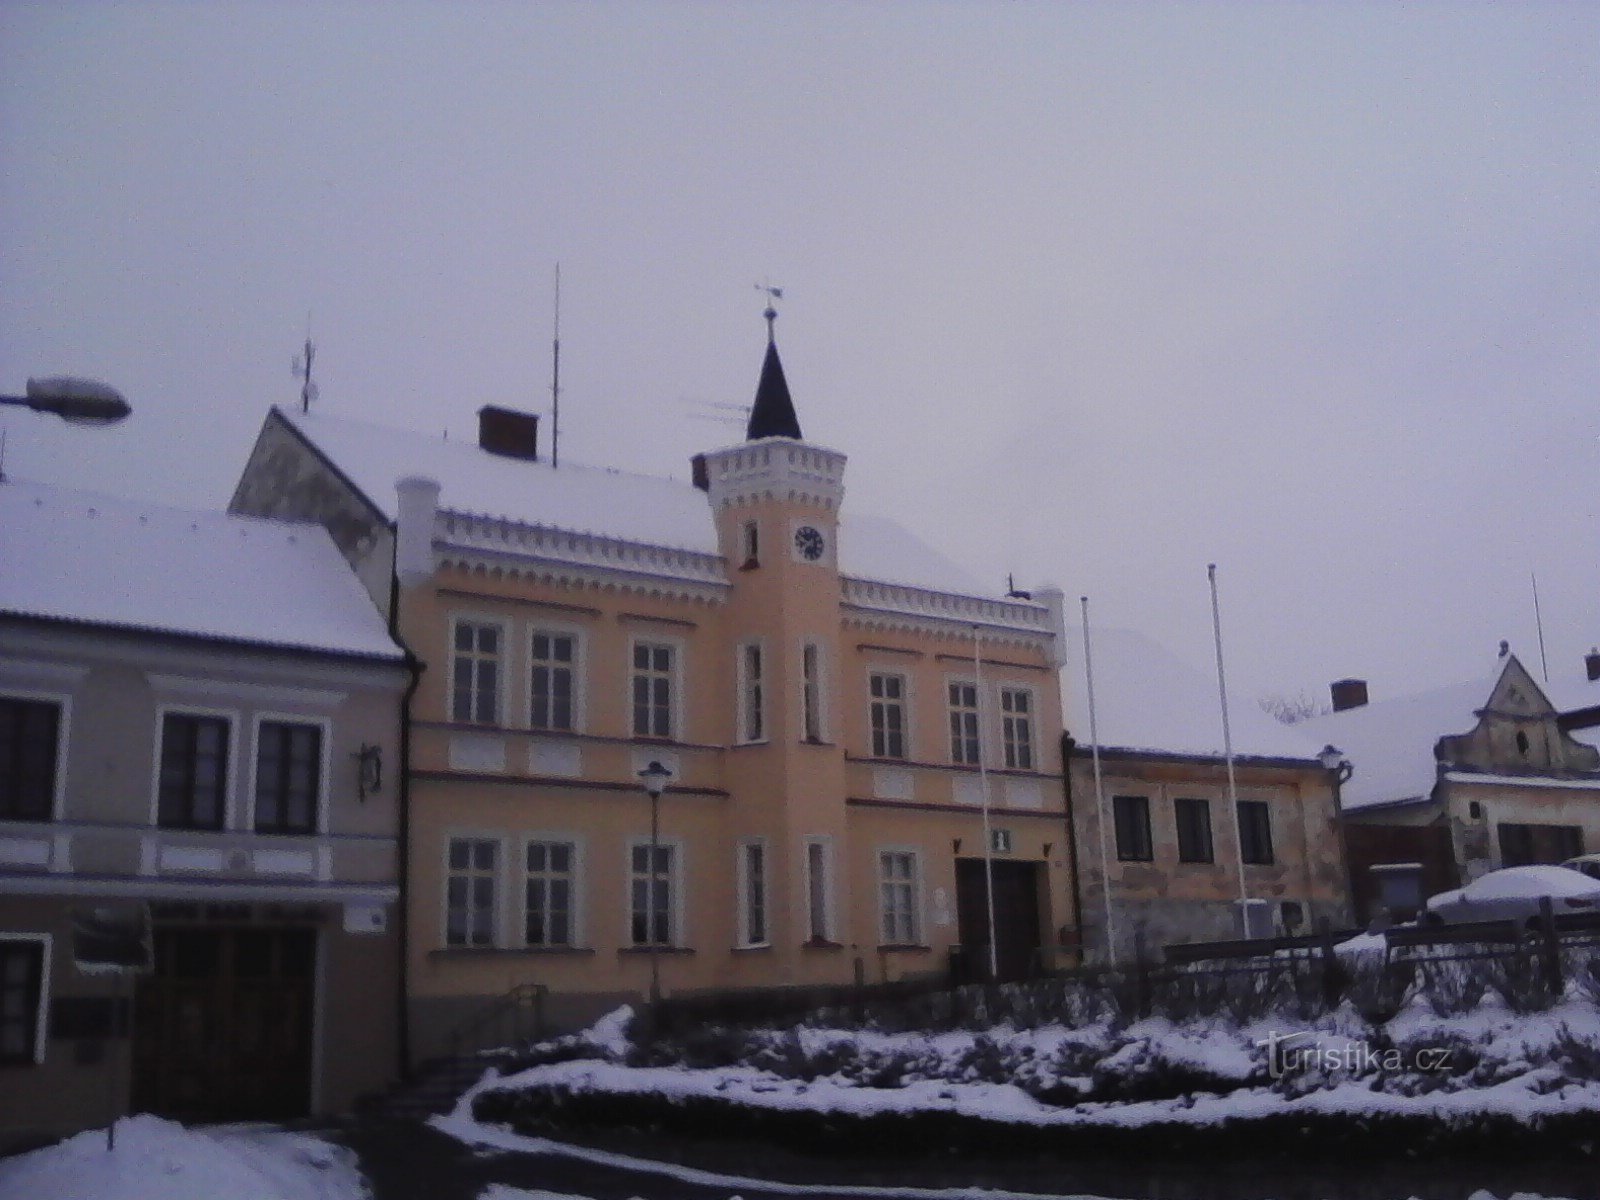 2. Az új prčicei városháza történelmi épülete 1884-ből származik.